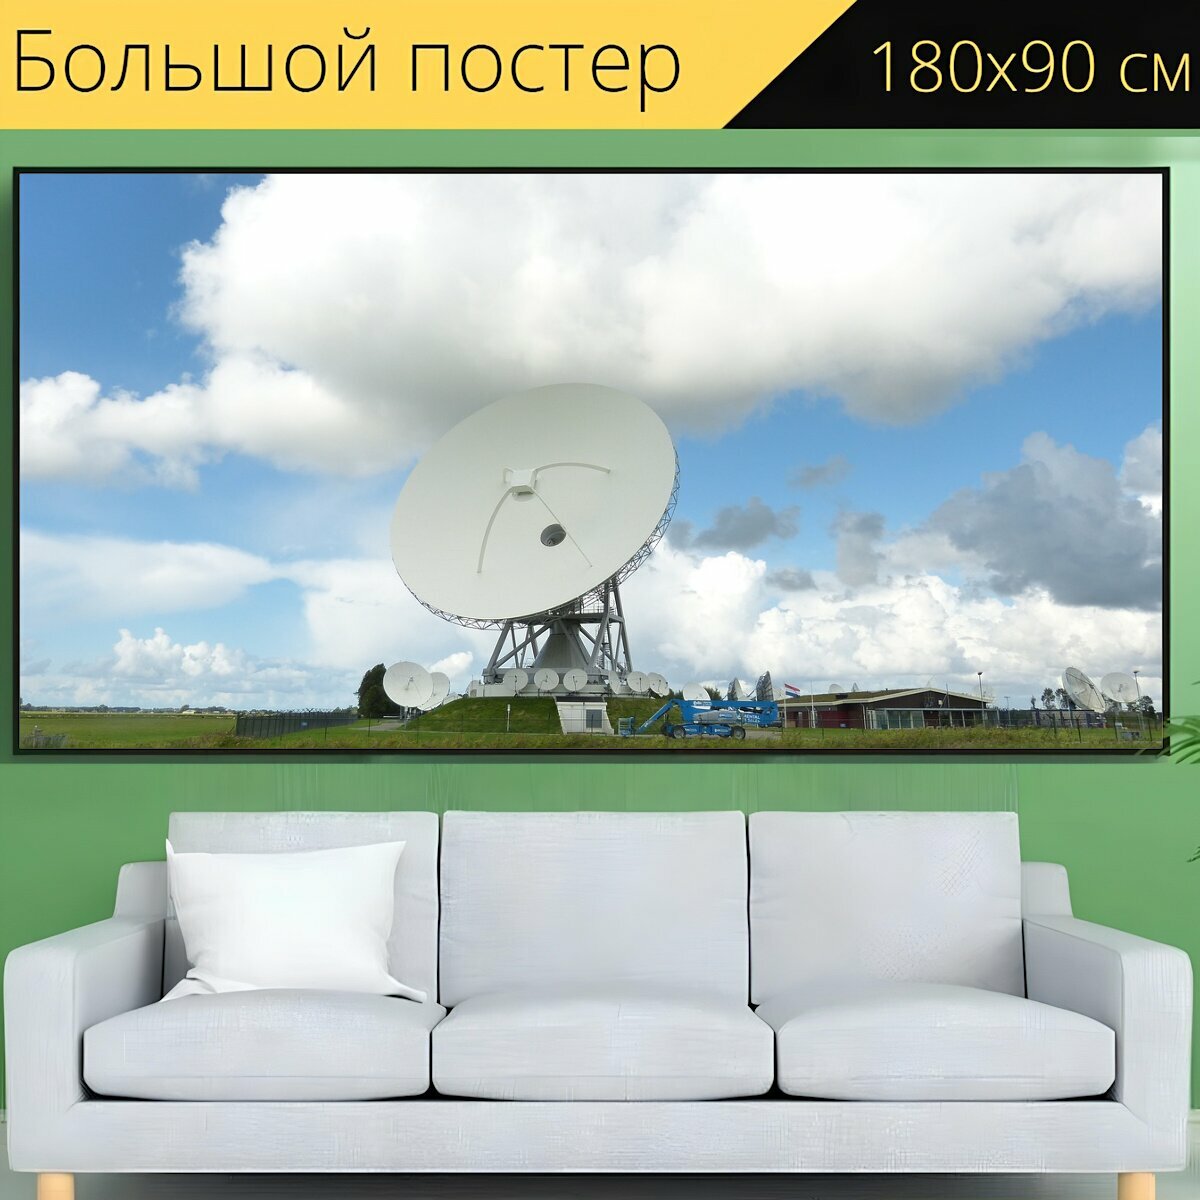 Большой постер "Радиотелескоп, спутниковая тарелка, луг" 180 x 90 см. для интерьера